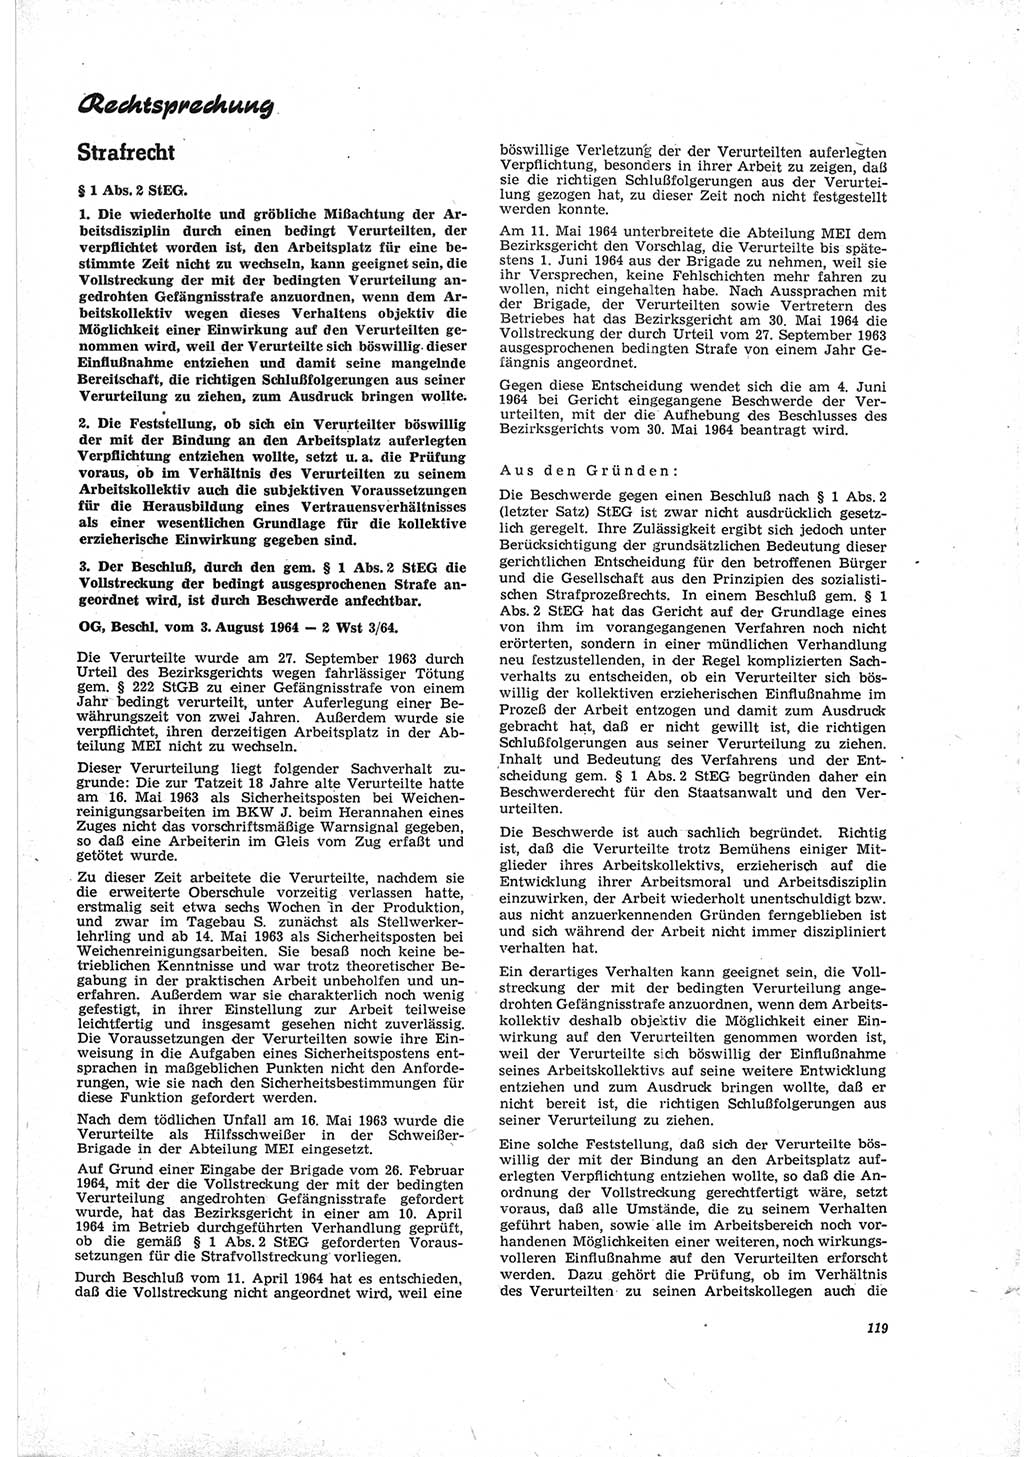 Neue Justiz (NJ), Zeitschrift für Recht und Rechtswissenschaft [Deutsche Demokratische Republik (DDR)], 19. Jahrgang 1965, Seite 119 (NJ DDR 1965, S. 119)